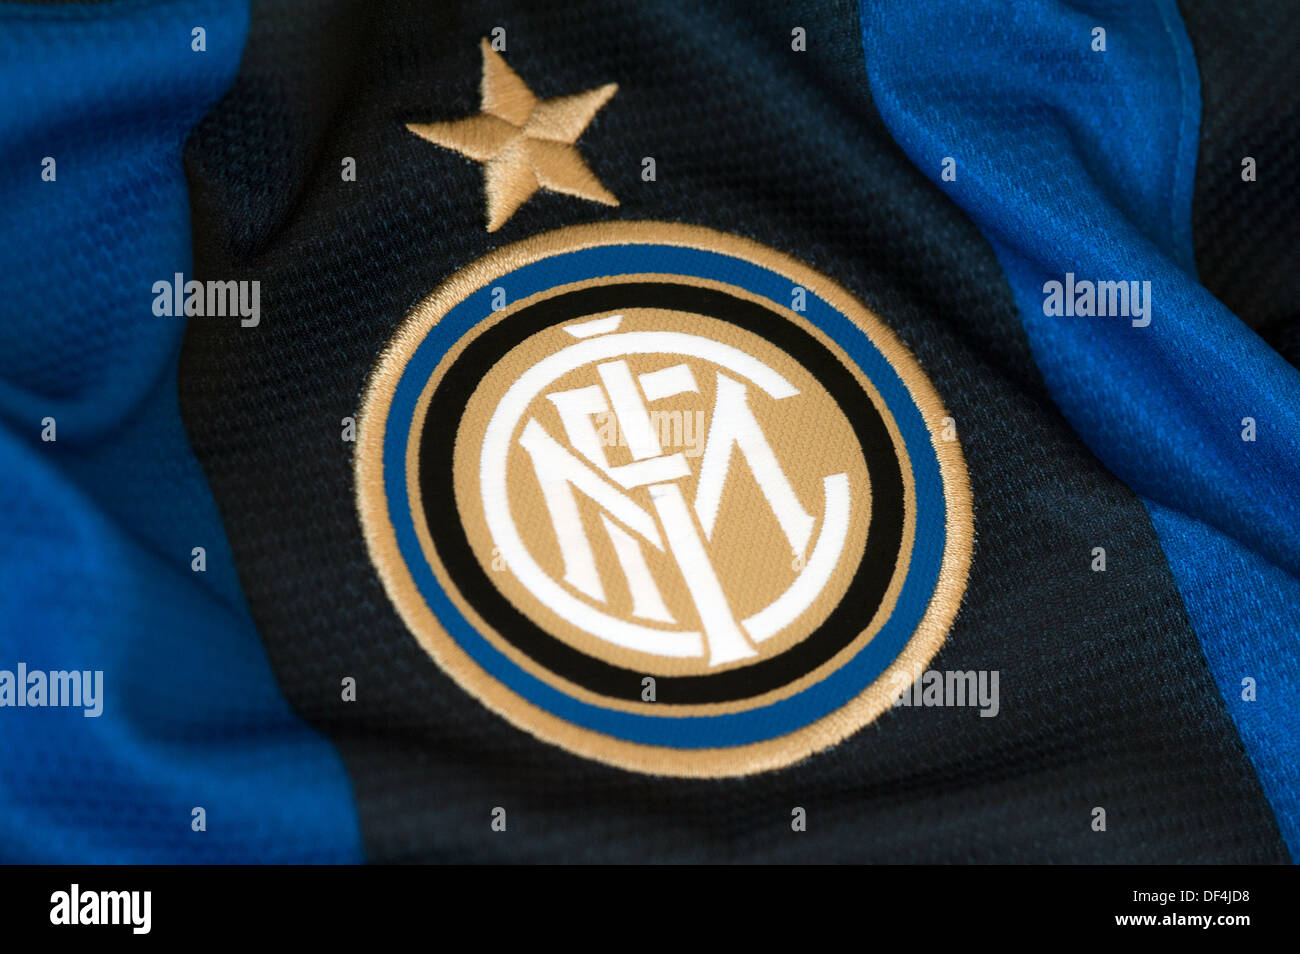 F.c. Internazionale Milano Stockfoto